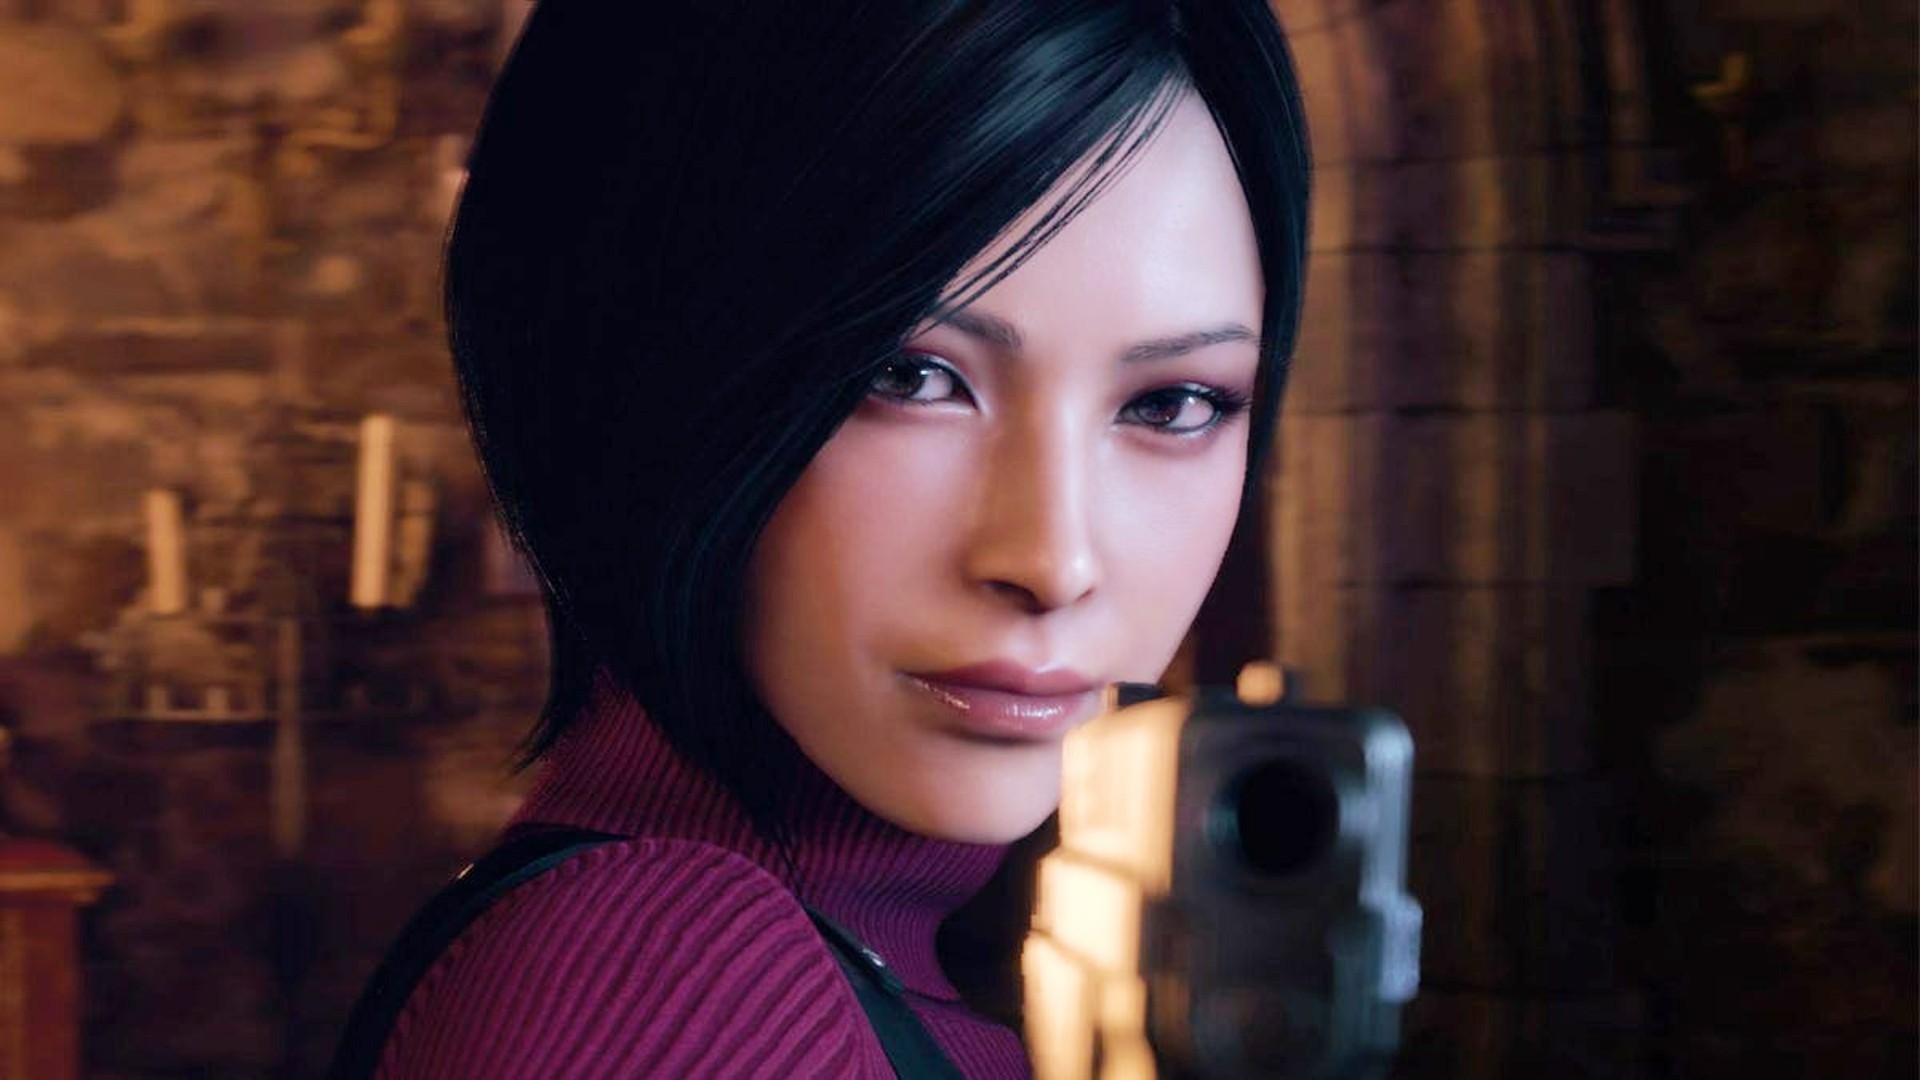 “My Ada is a survivor”: Resident Evil 4 Remake actor on backlash